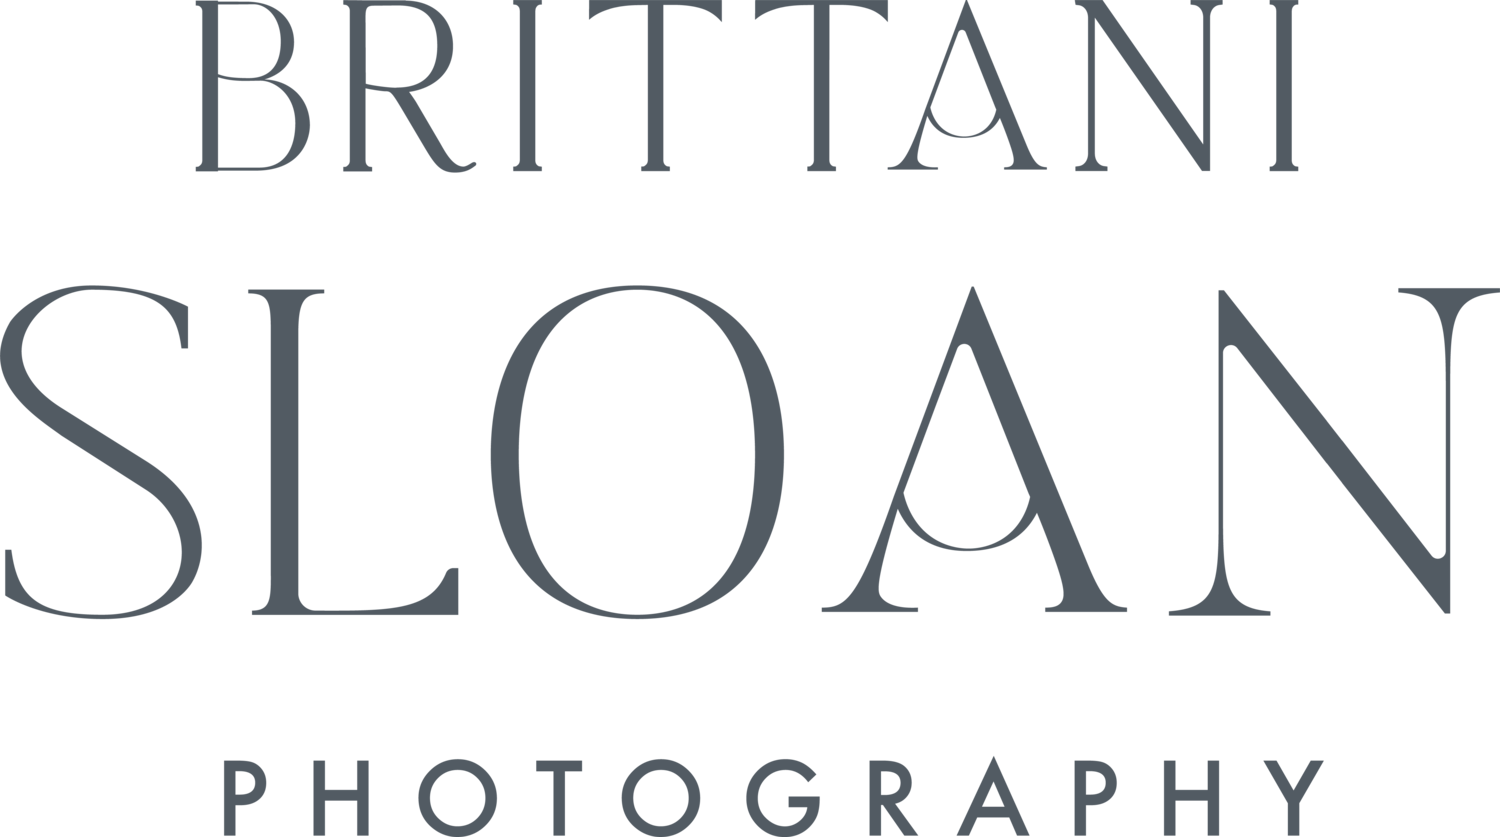 Brittani Sloan Photography